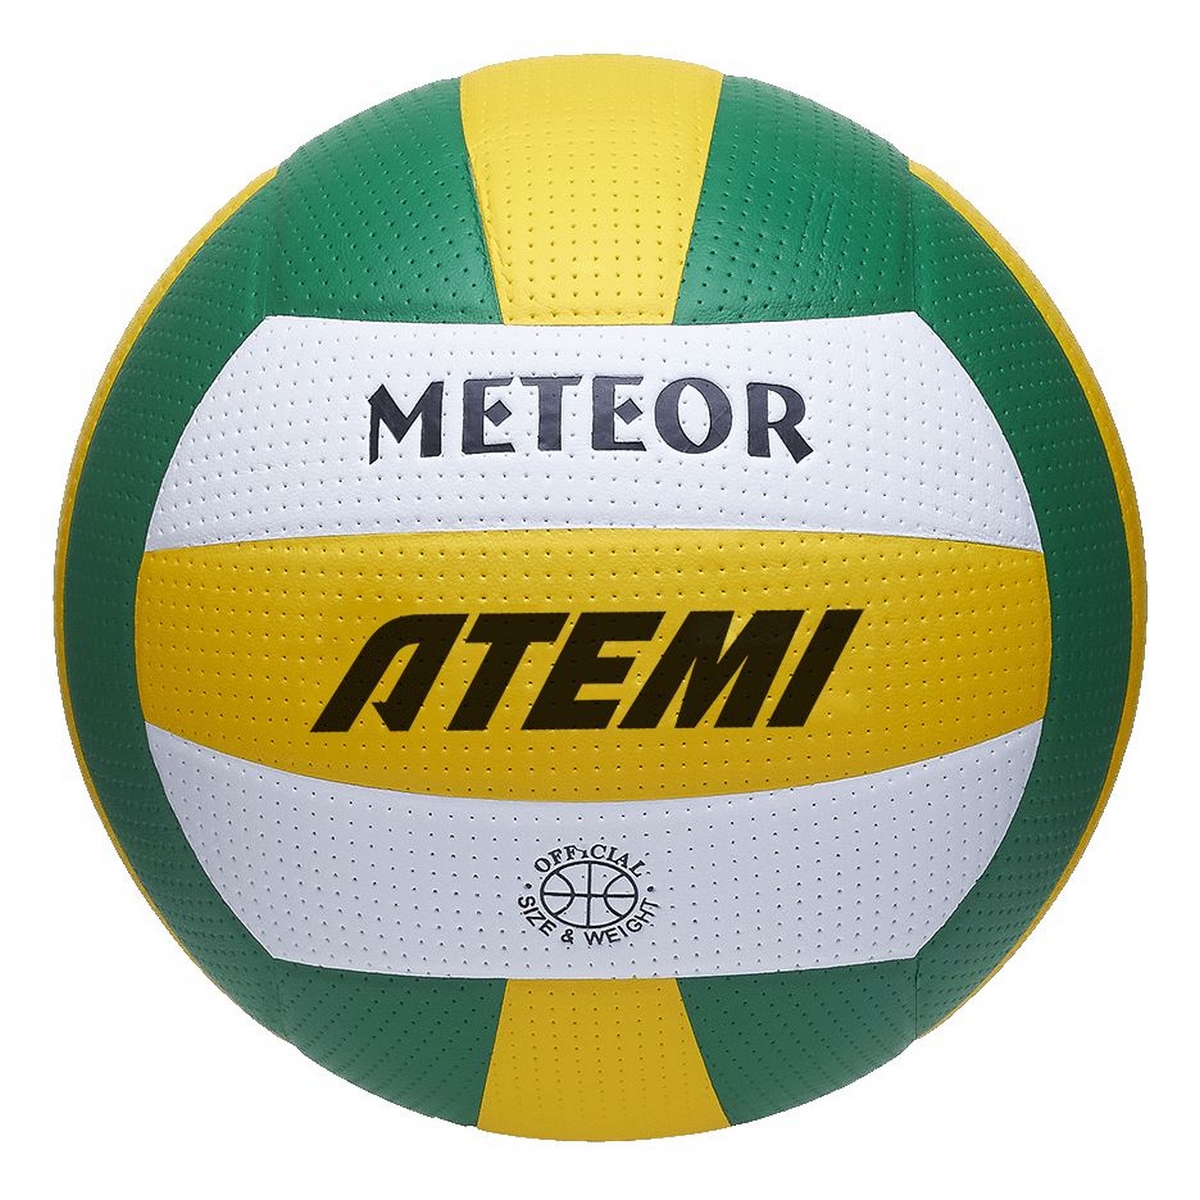   Atemi Meteor (N), .5,  65-67